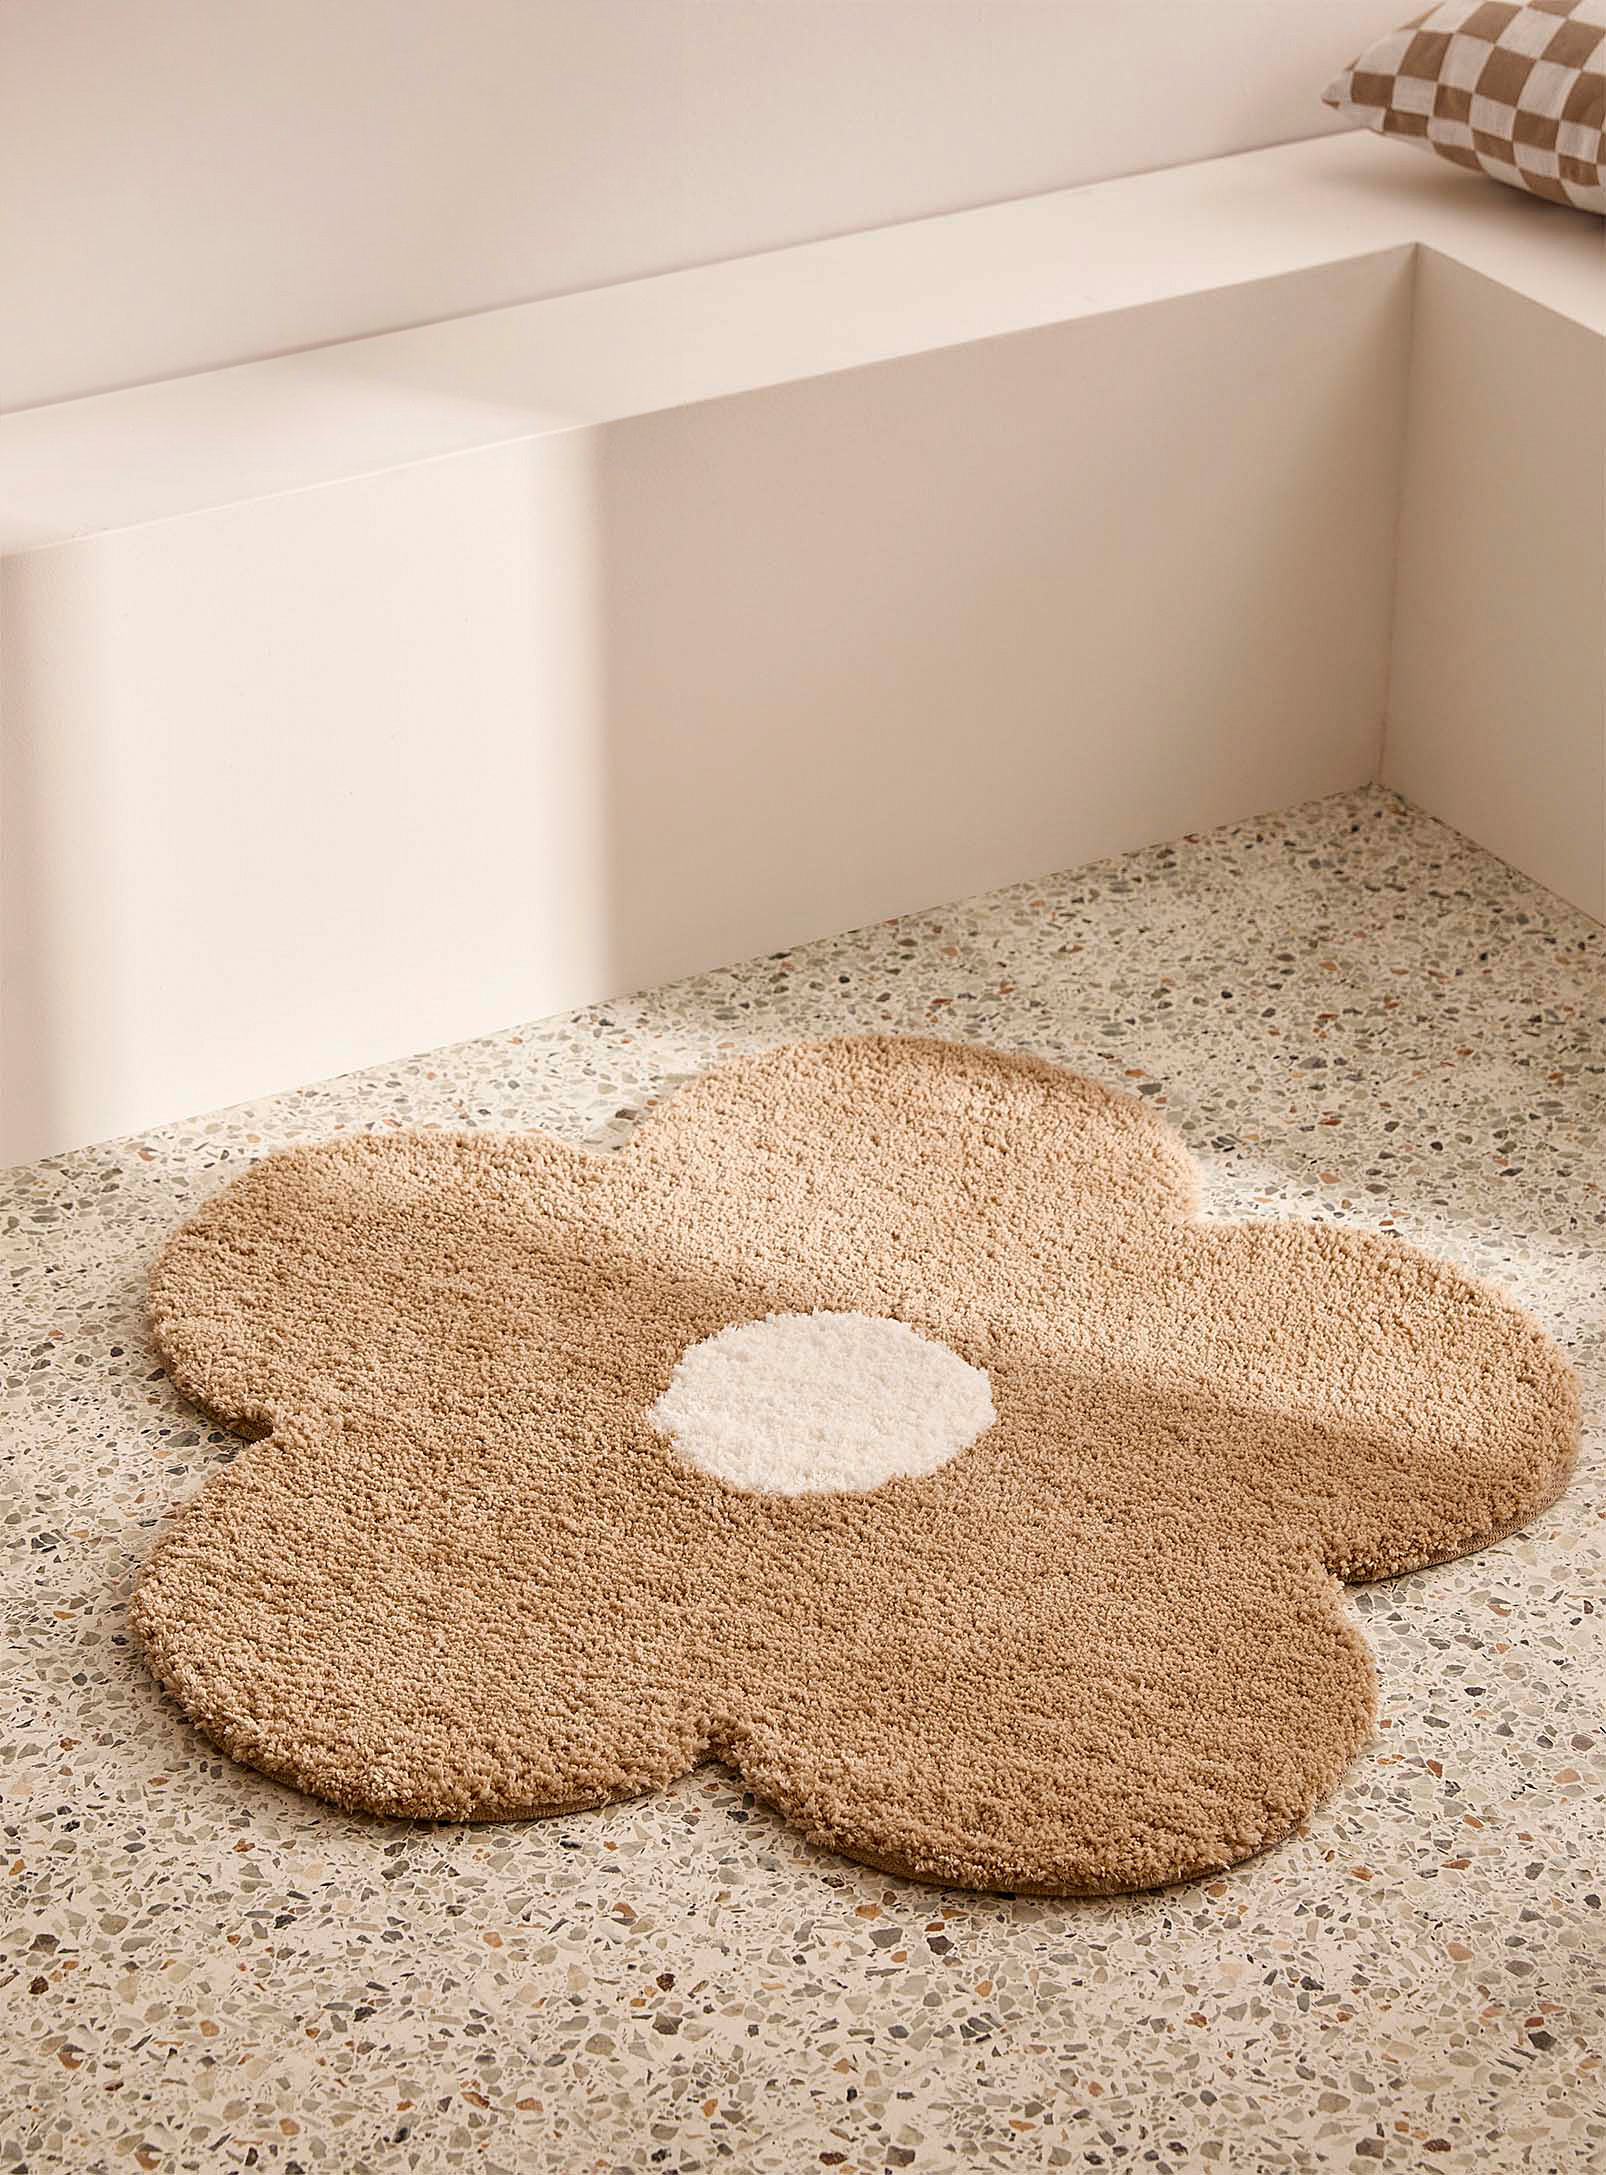 Simons Maison - Retro flower rug 80 cm in diameter